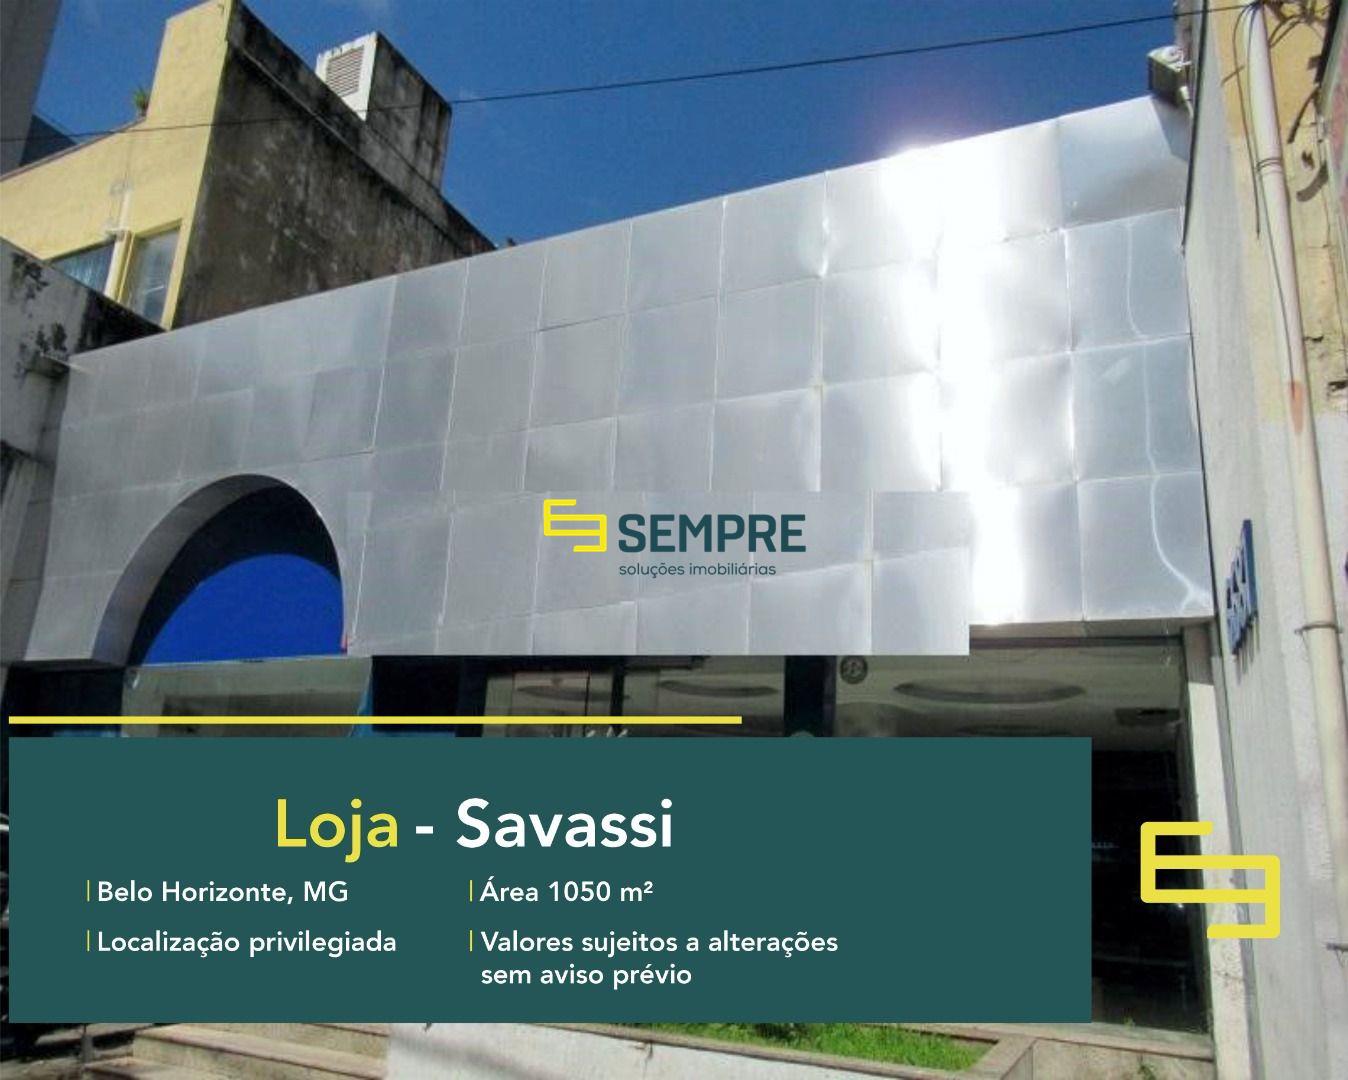 Loja para alugar na Savassi em Belo Horizonte, excelente localização! O estabelecimento comercial conta, sobretudo, com área de 1050 m².